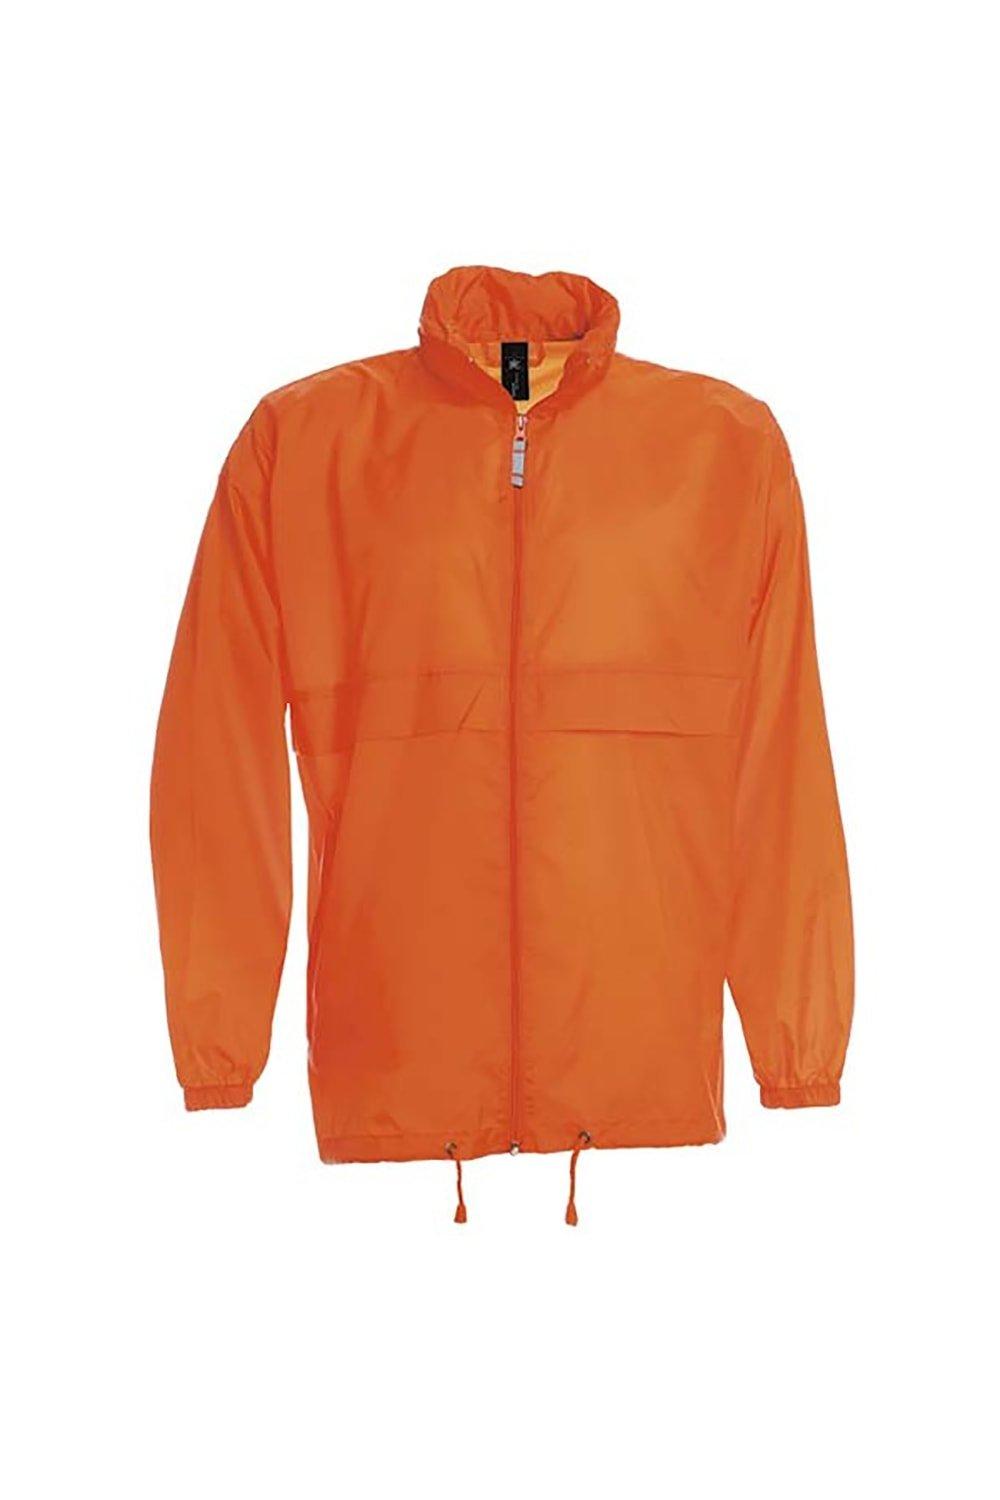 Легкая куртка Sirocco Наружные куртки B&C, оранжевый